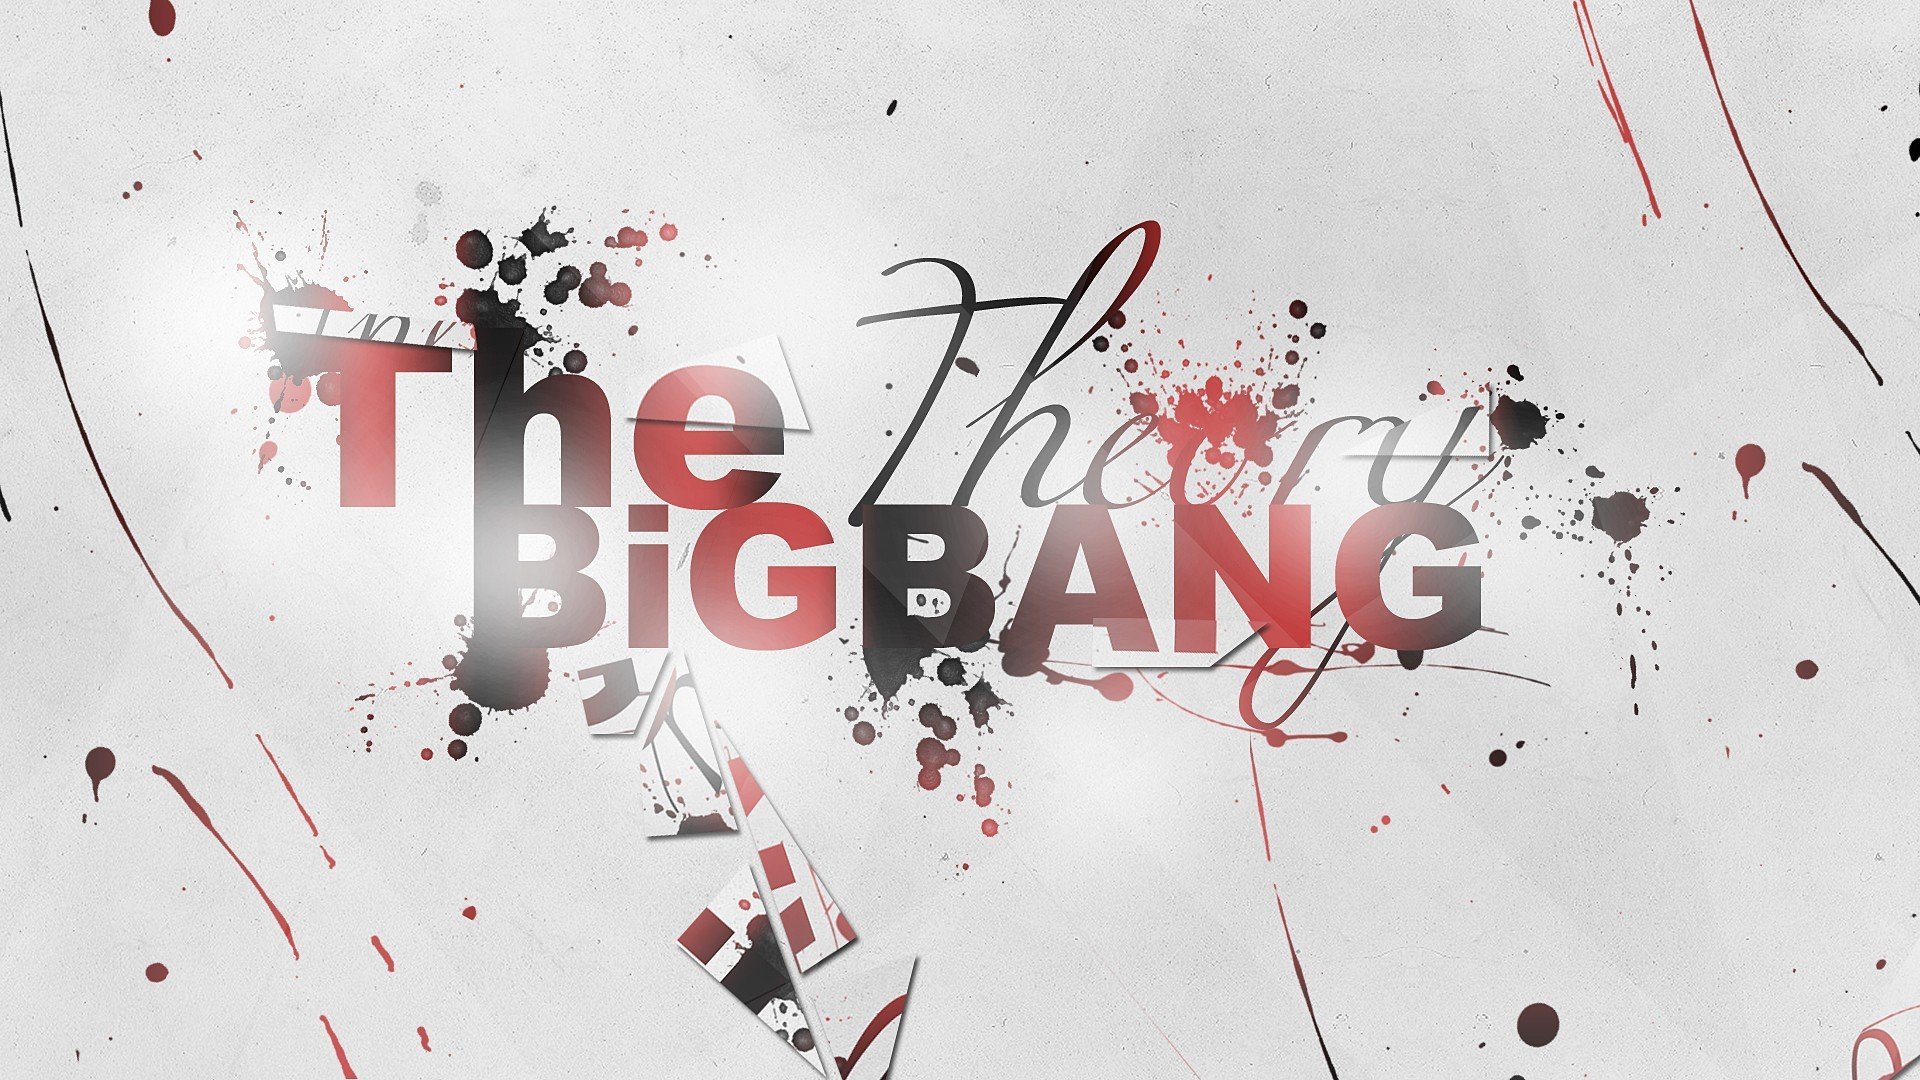 The Big Bang Theory Wallpaper